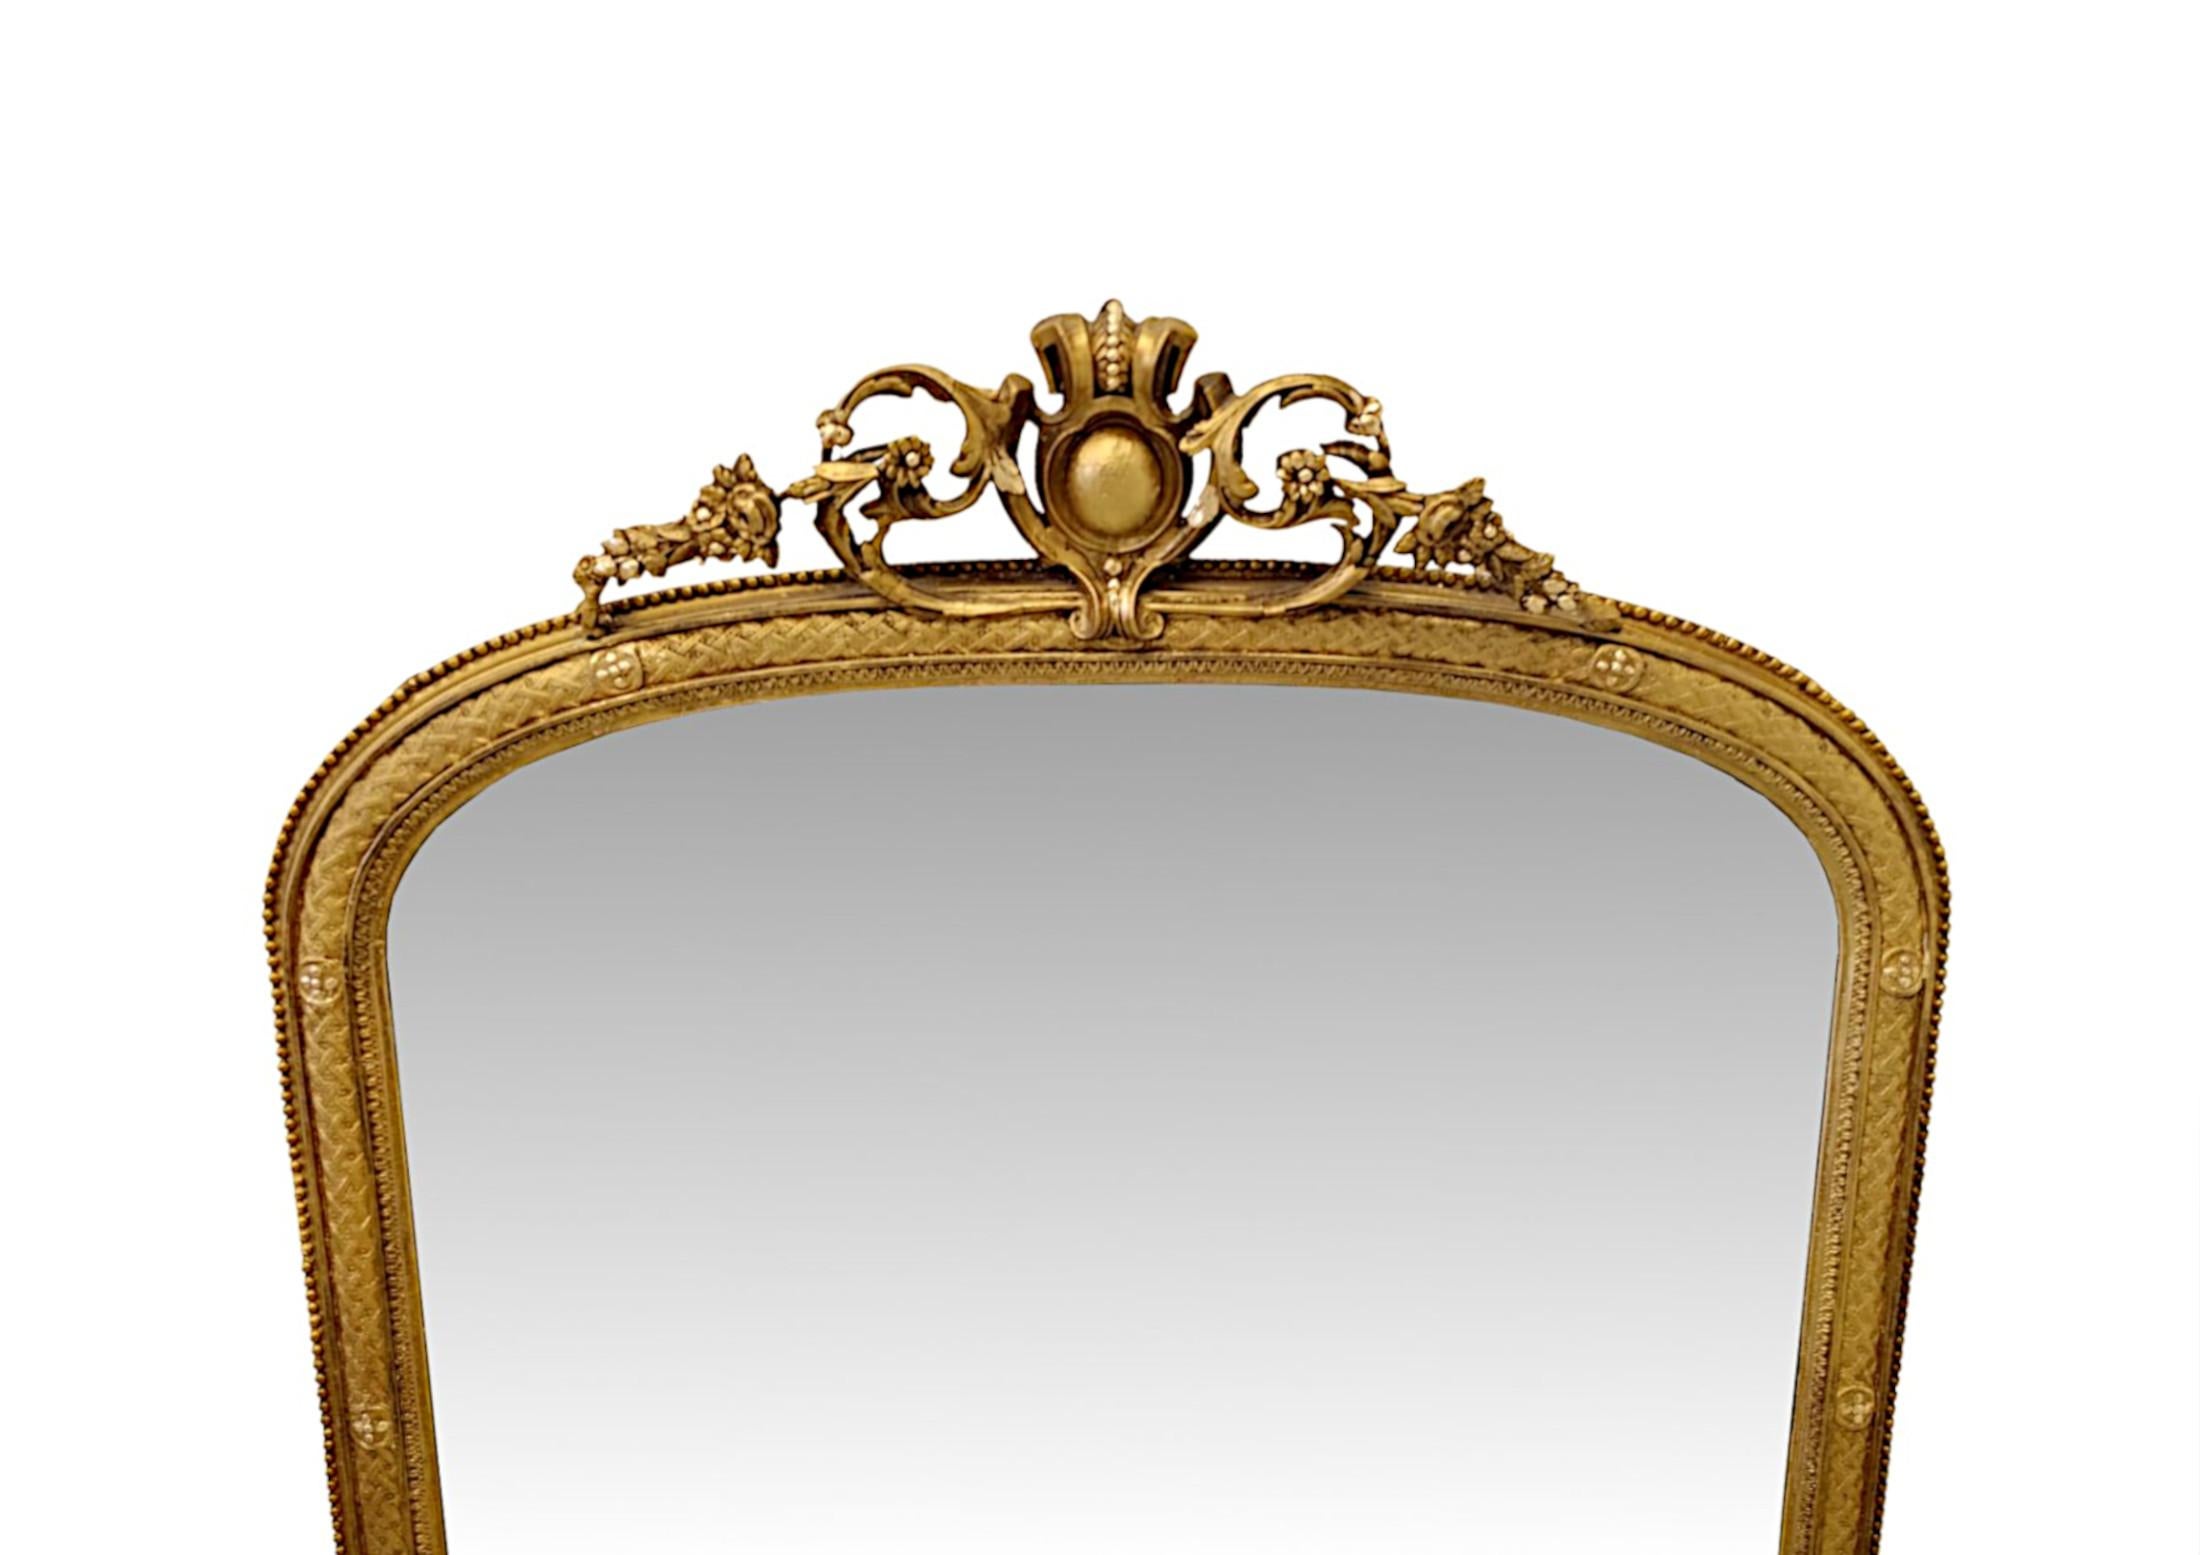 Un fabuleux miroir à trumeau en bois doré du XIXe siècle, finement sculpté à la main et d'une qualité exceptionnelle.  La plaque de verre miroir de forme A est enchâssée dans un superbe cadre en bois doré mouluré et cannelé, avec des bordures